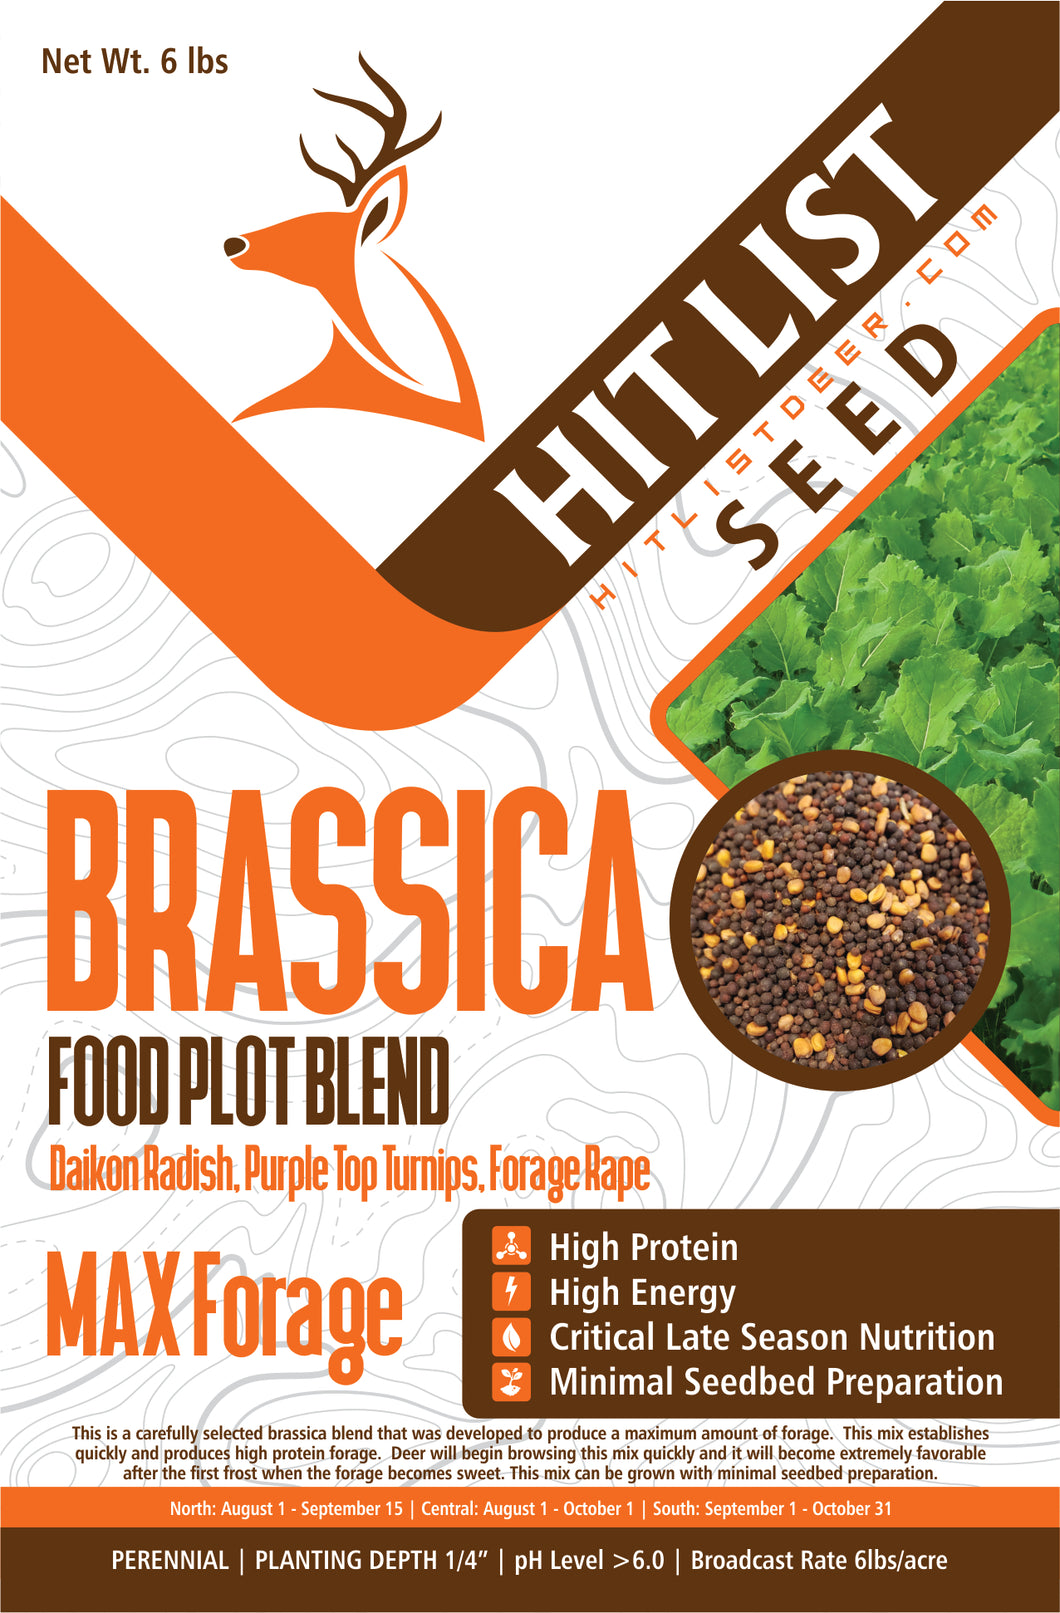 Brassica Blend Food Plot Mix - Turnips, Radish, Forage Rape